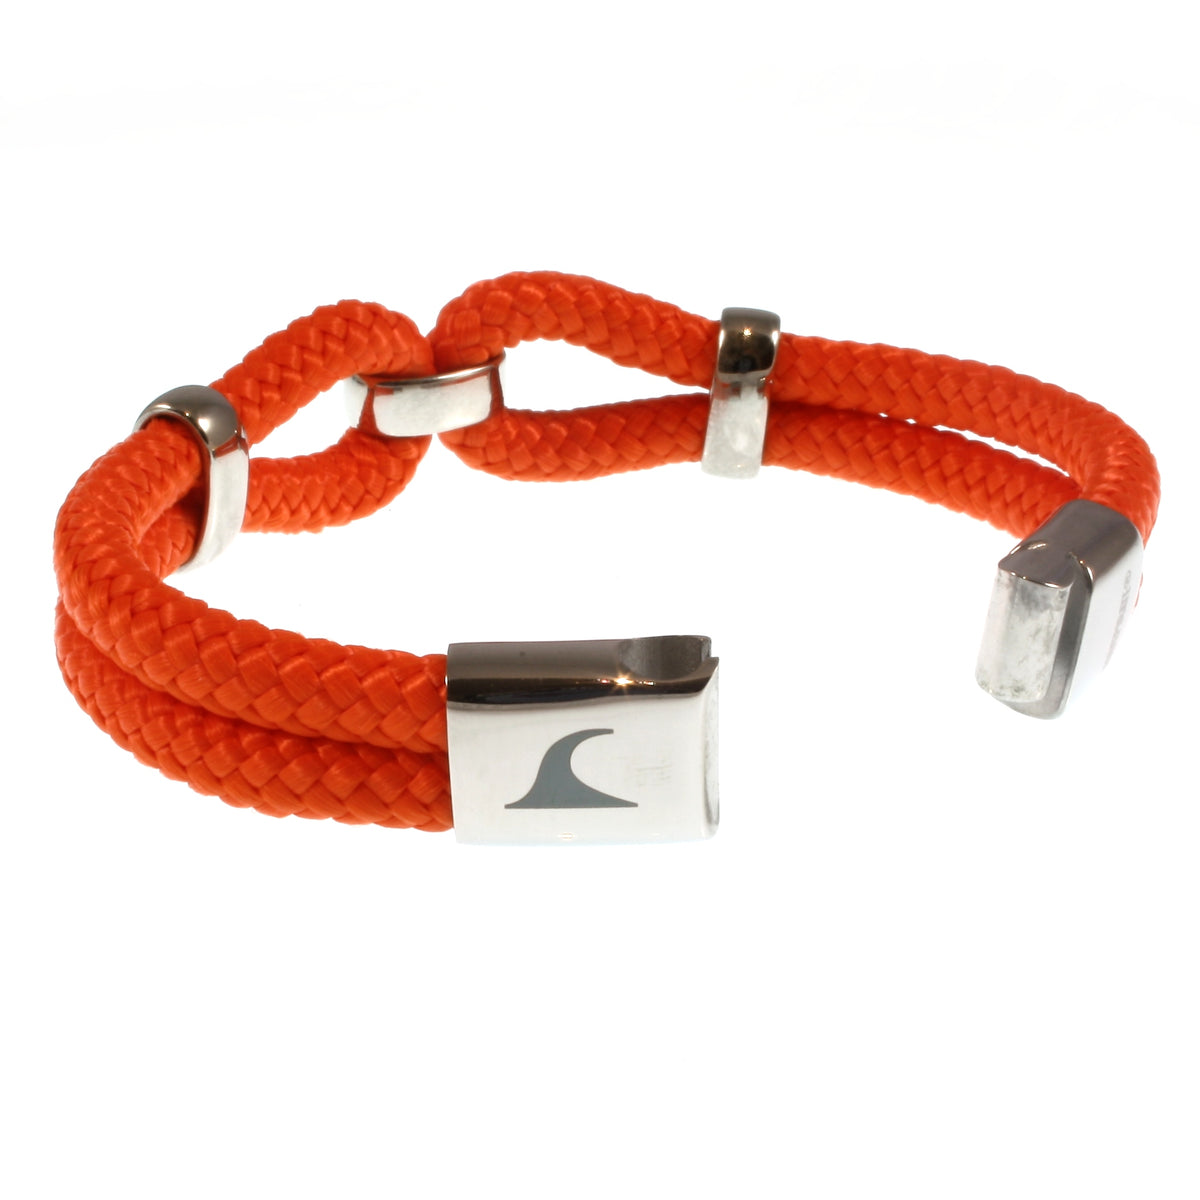 Damen-Segeltau-armband-roma-orange-geflochten-Edelstahlverschluss-offen-wavepirate-shop-st